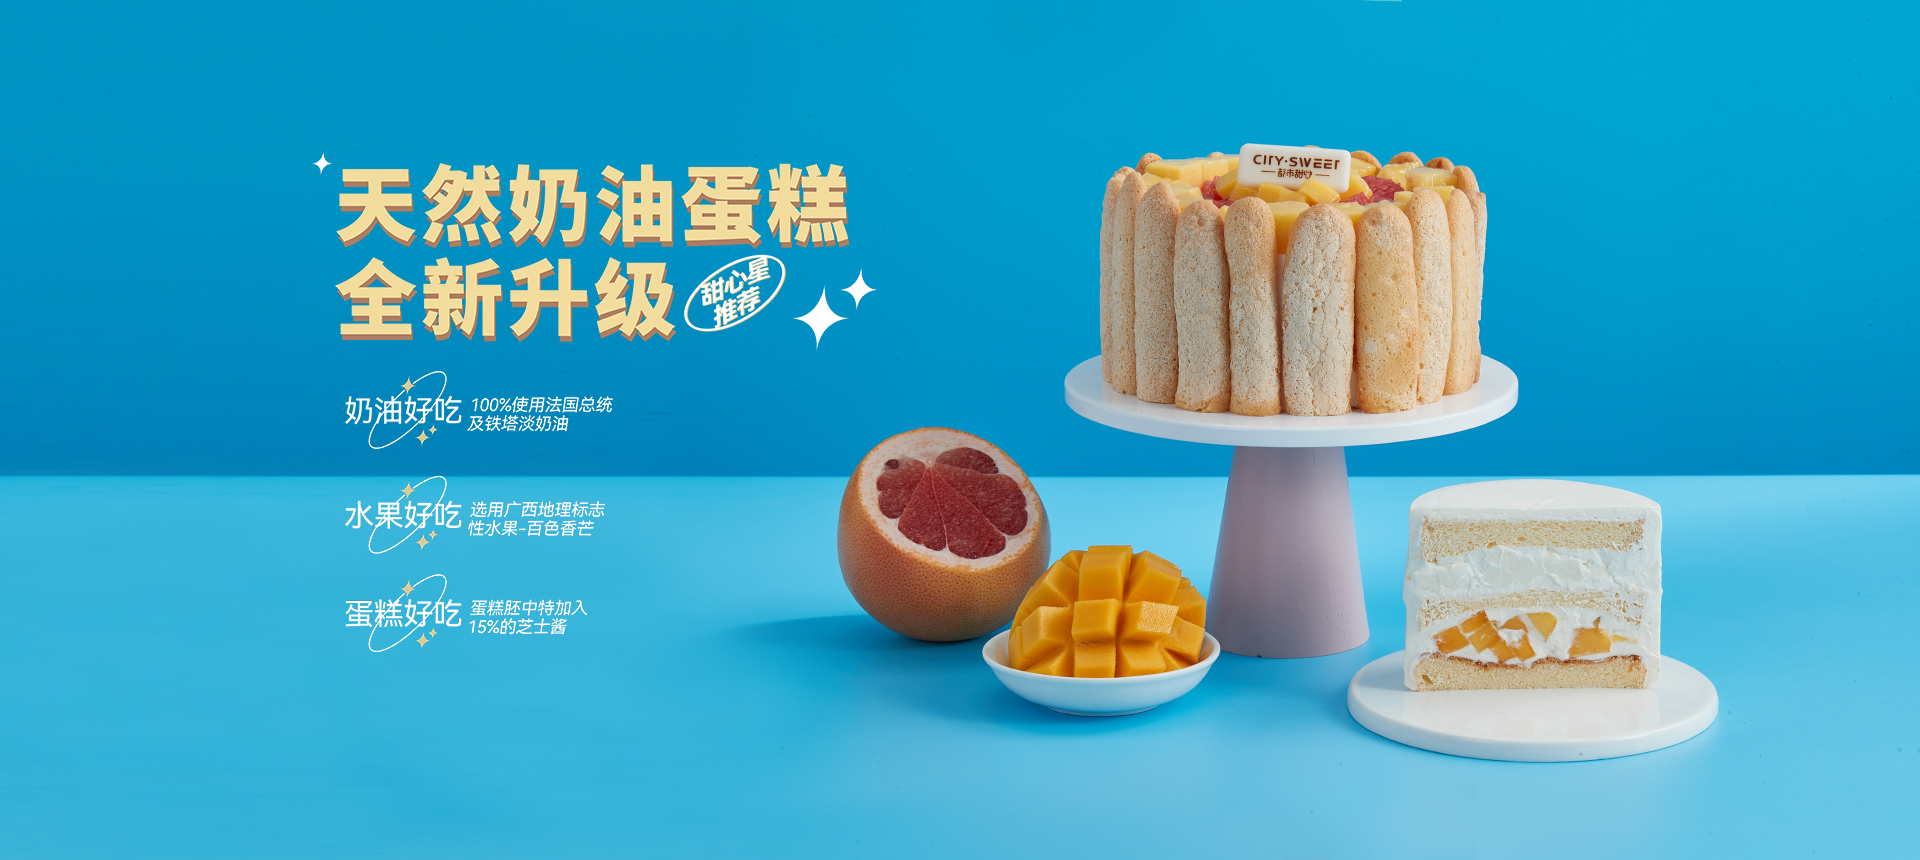 蛋糕店加盟-上海蛋糕店-南寧蛋糕品牌-南寧市都市甜心食品有限公司